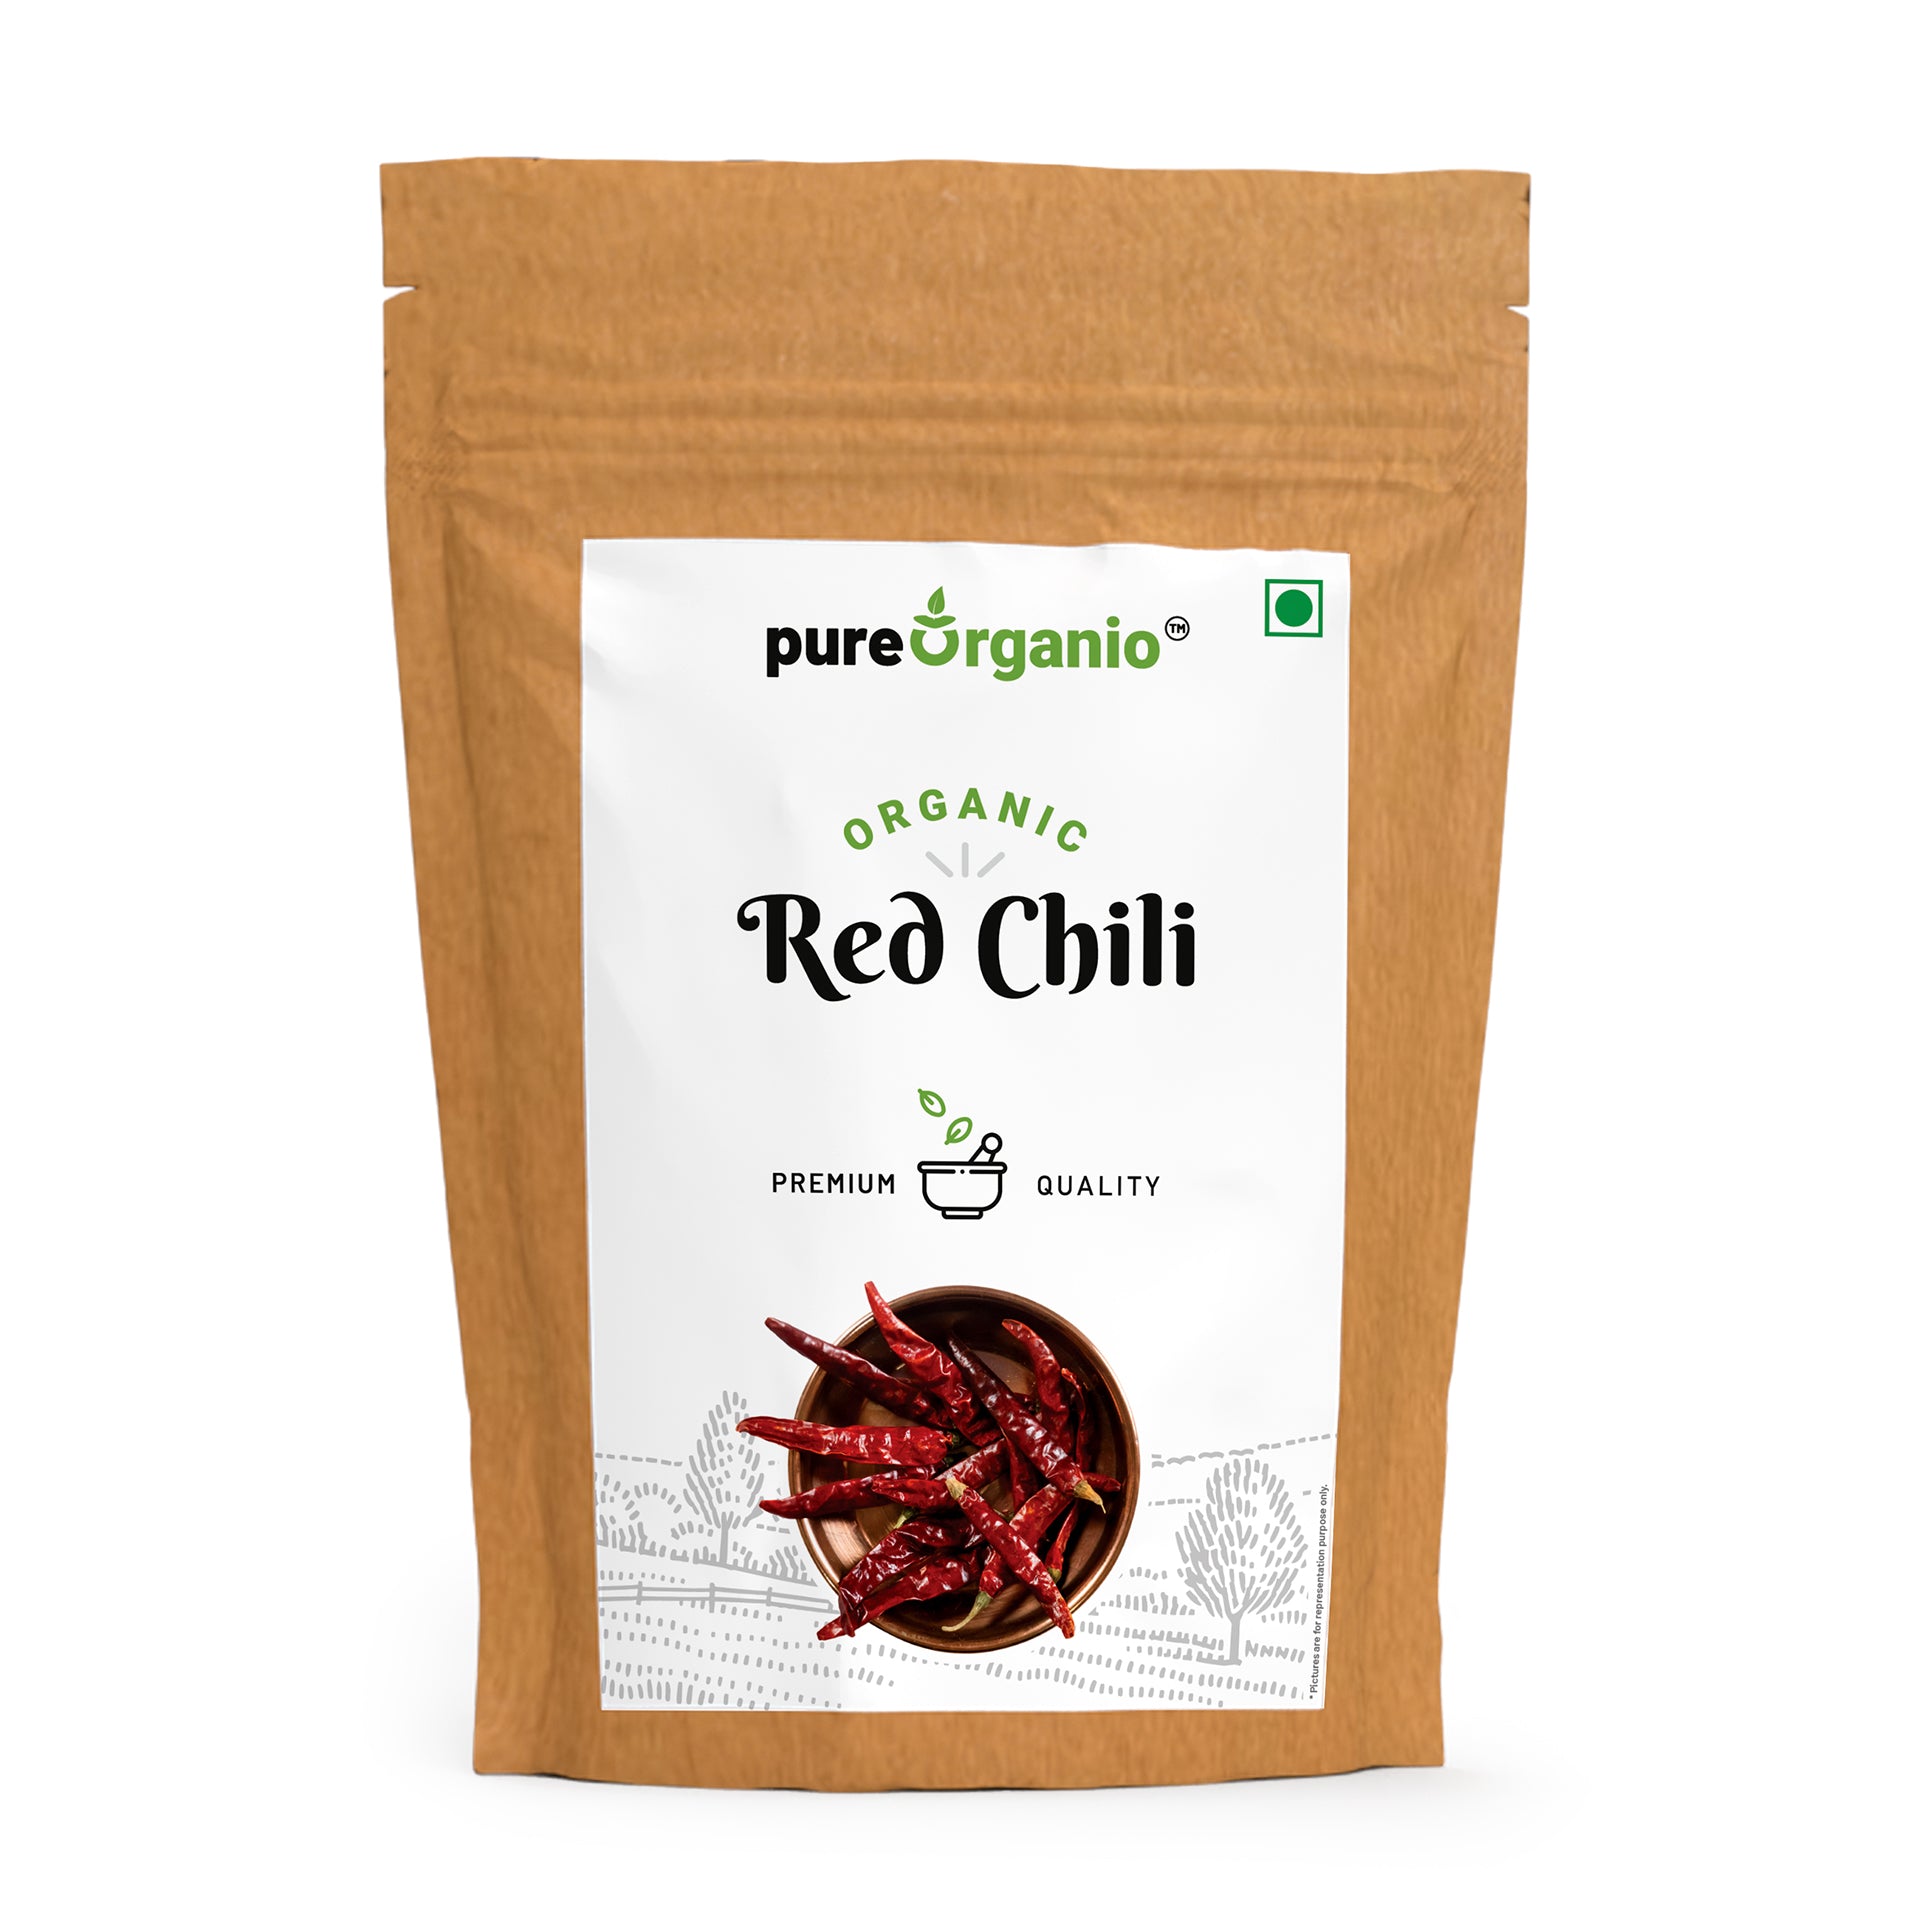 Pureorganio Organic Reshampatti Red chilli Whole Lal Mirch